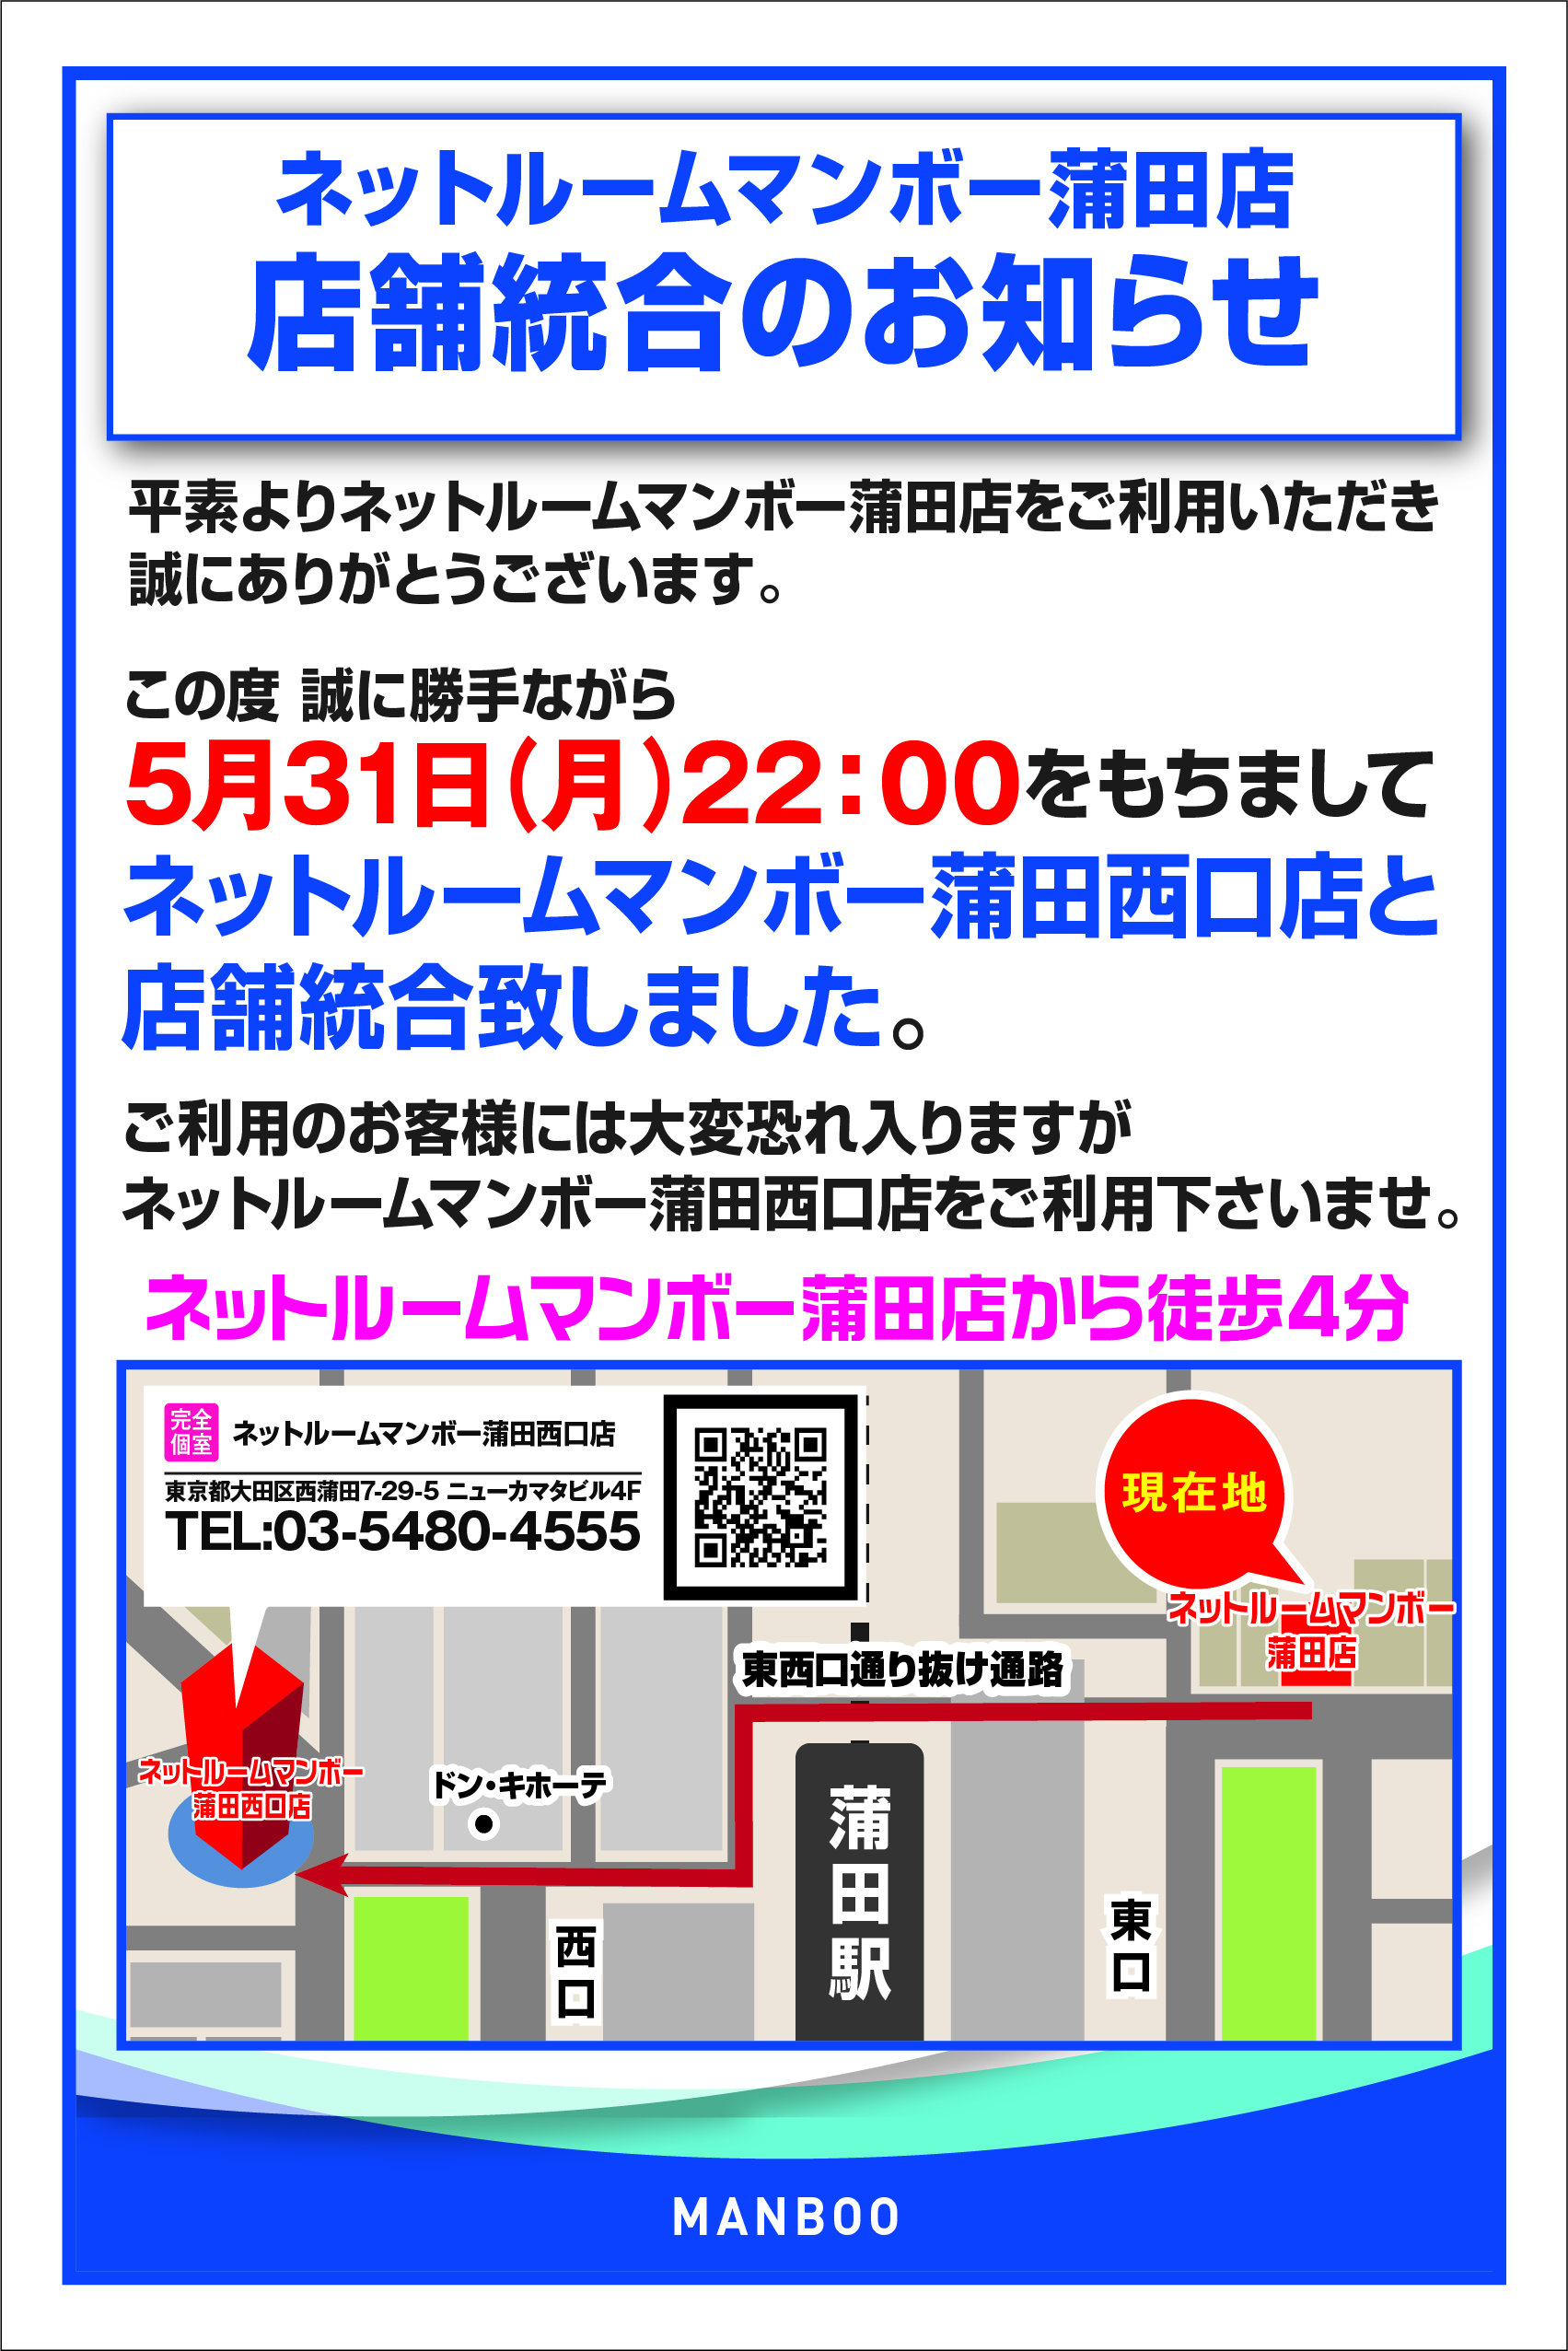 マンボーネットルーム蒲田店は、マンボーネットルーム蒲田西口店と店舗統合しました。